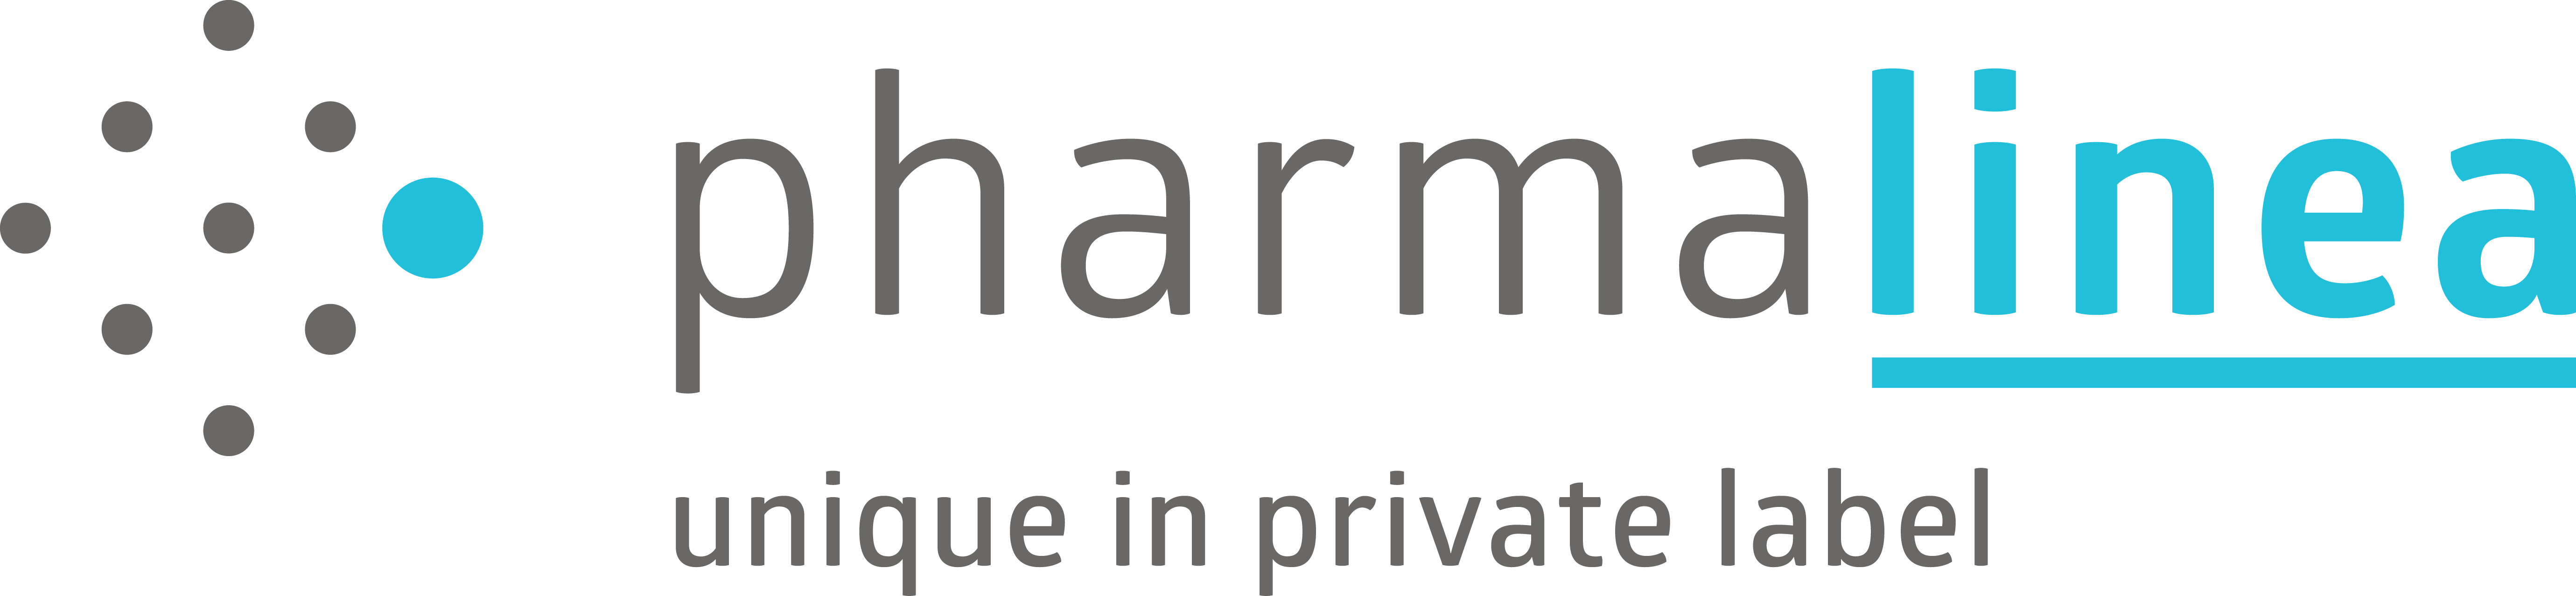 PharmaLinea-Logotip_png.png